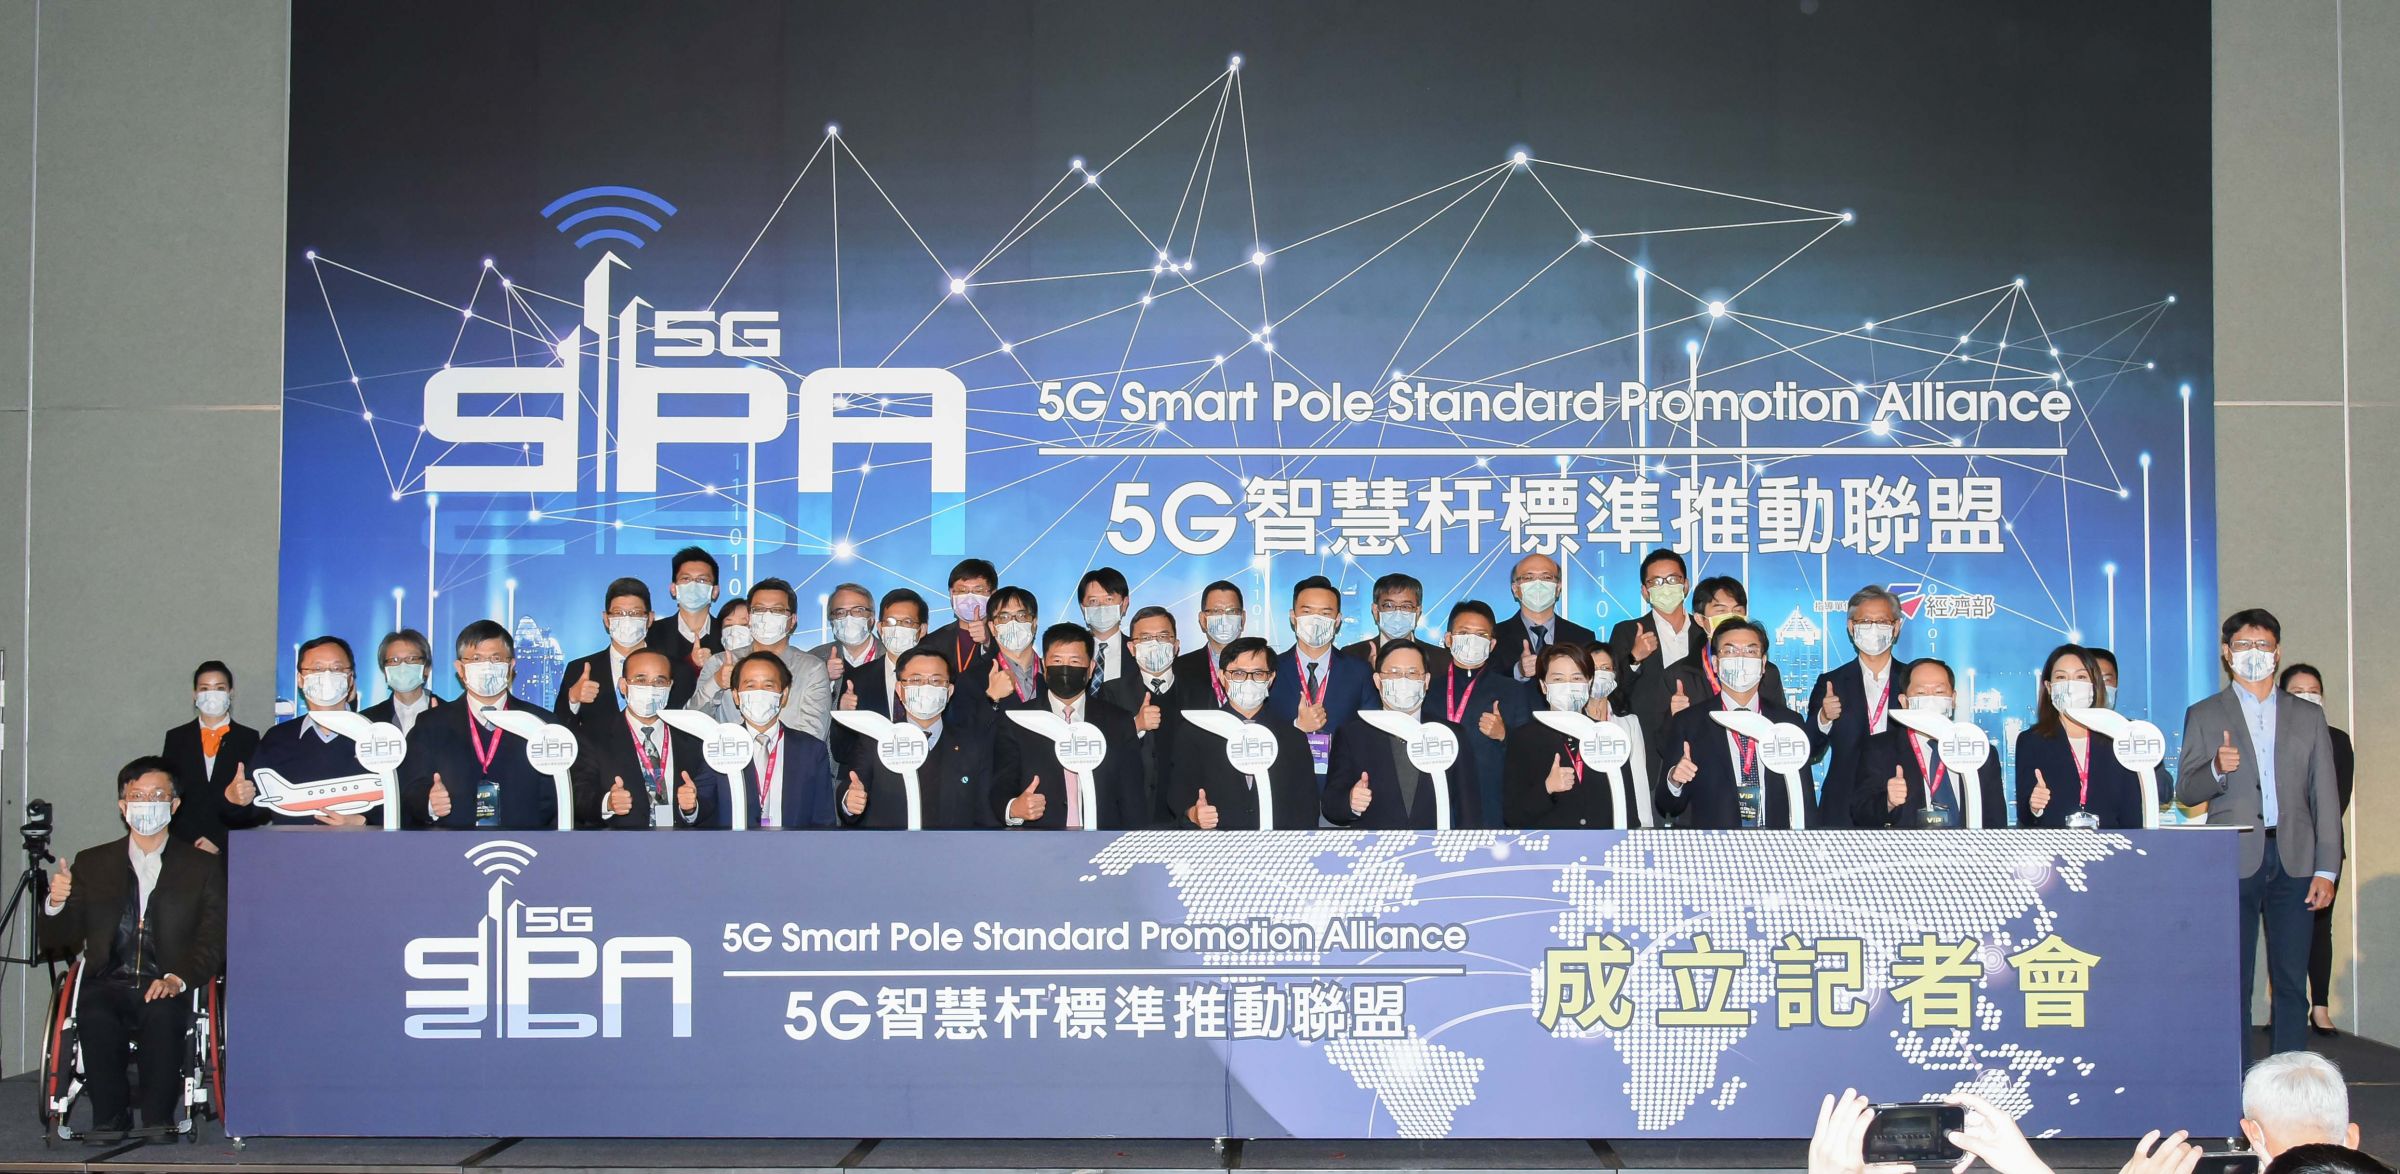 PROSCEND ने 5G स्मार्ट पोल मानक प्रचार संघ के प्रेस कांफ्रेंस में हिस्सा लिया।